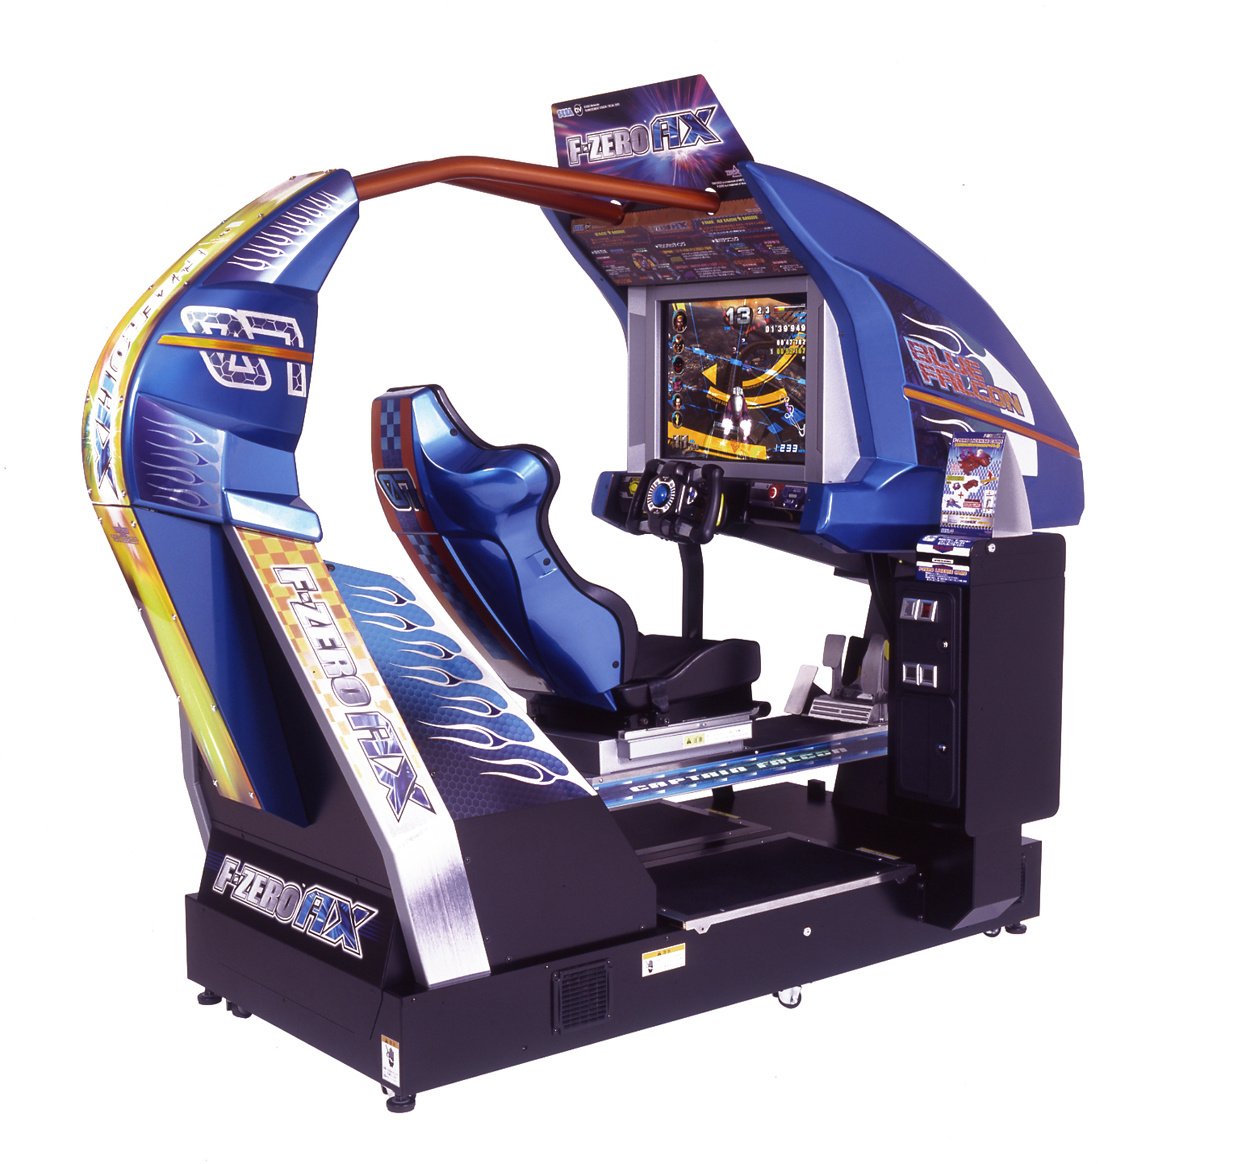 Игровой автомат для гонок 1 икс бет игровые автоматы официальный сайт